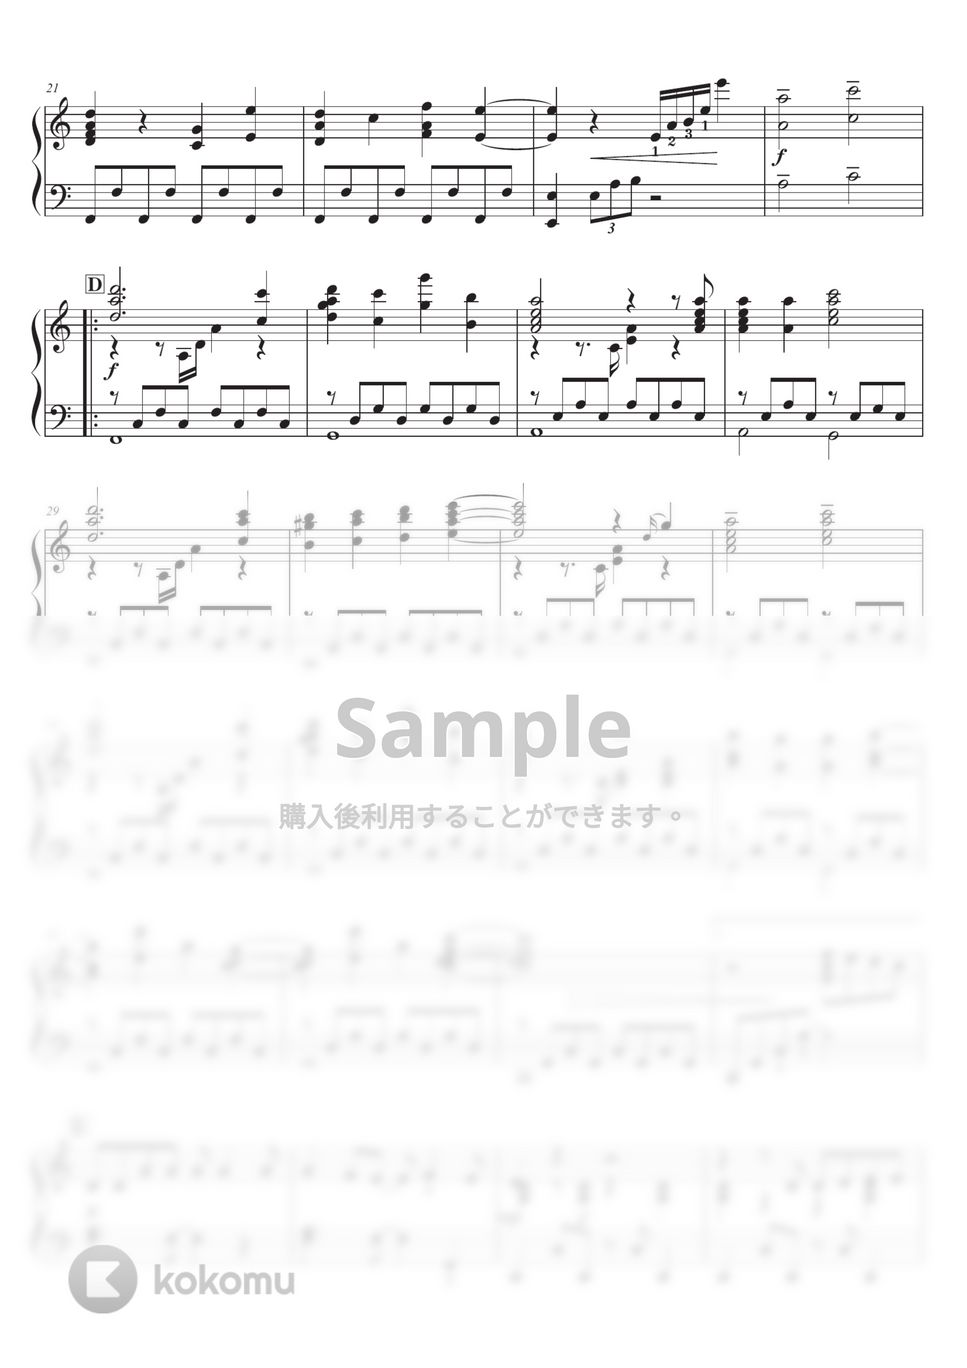 王様ランキング - 裸の勇者 ピアノソロ中級 by SugarPM